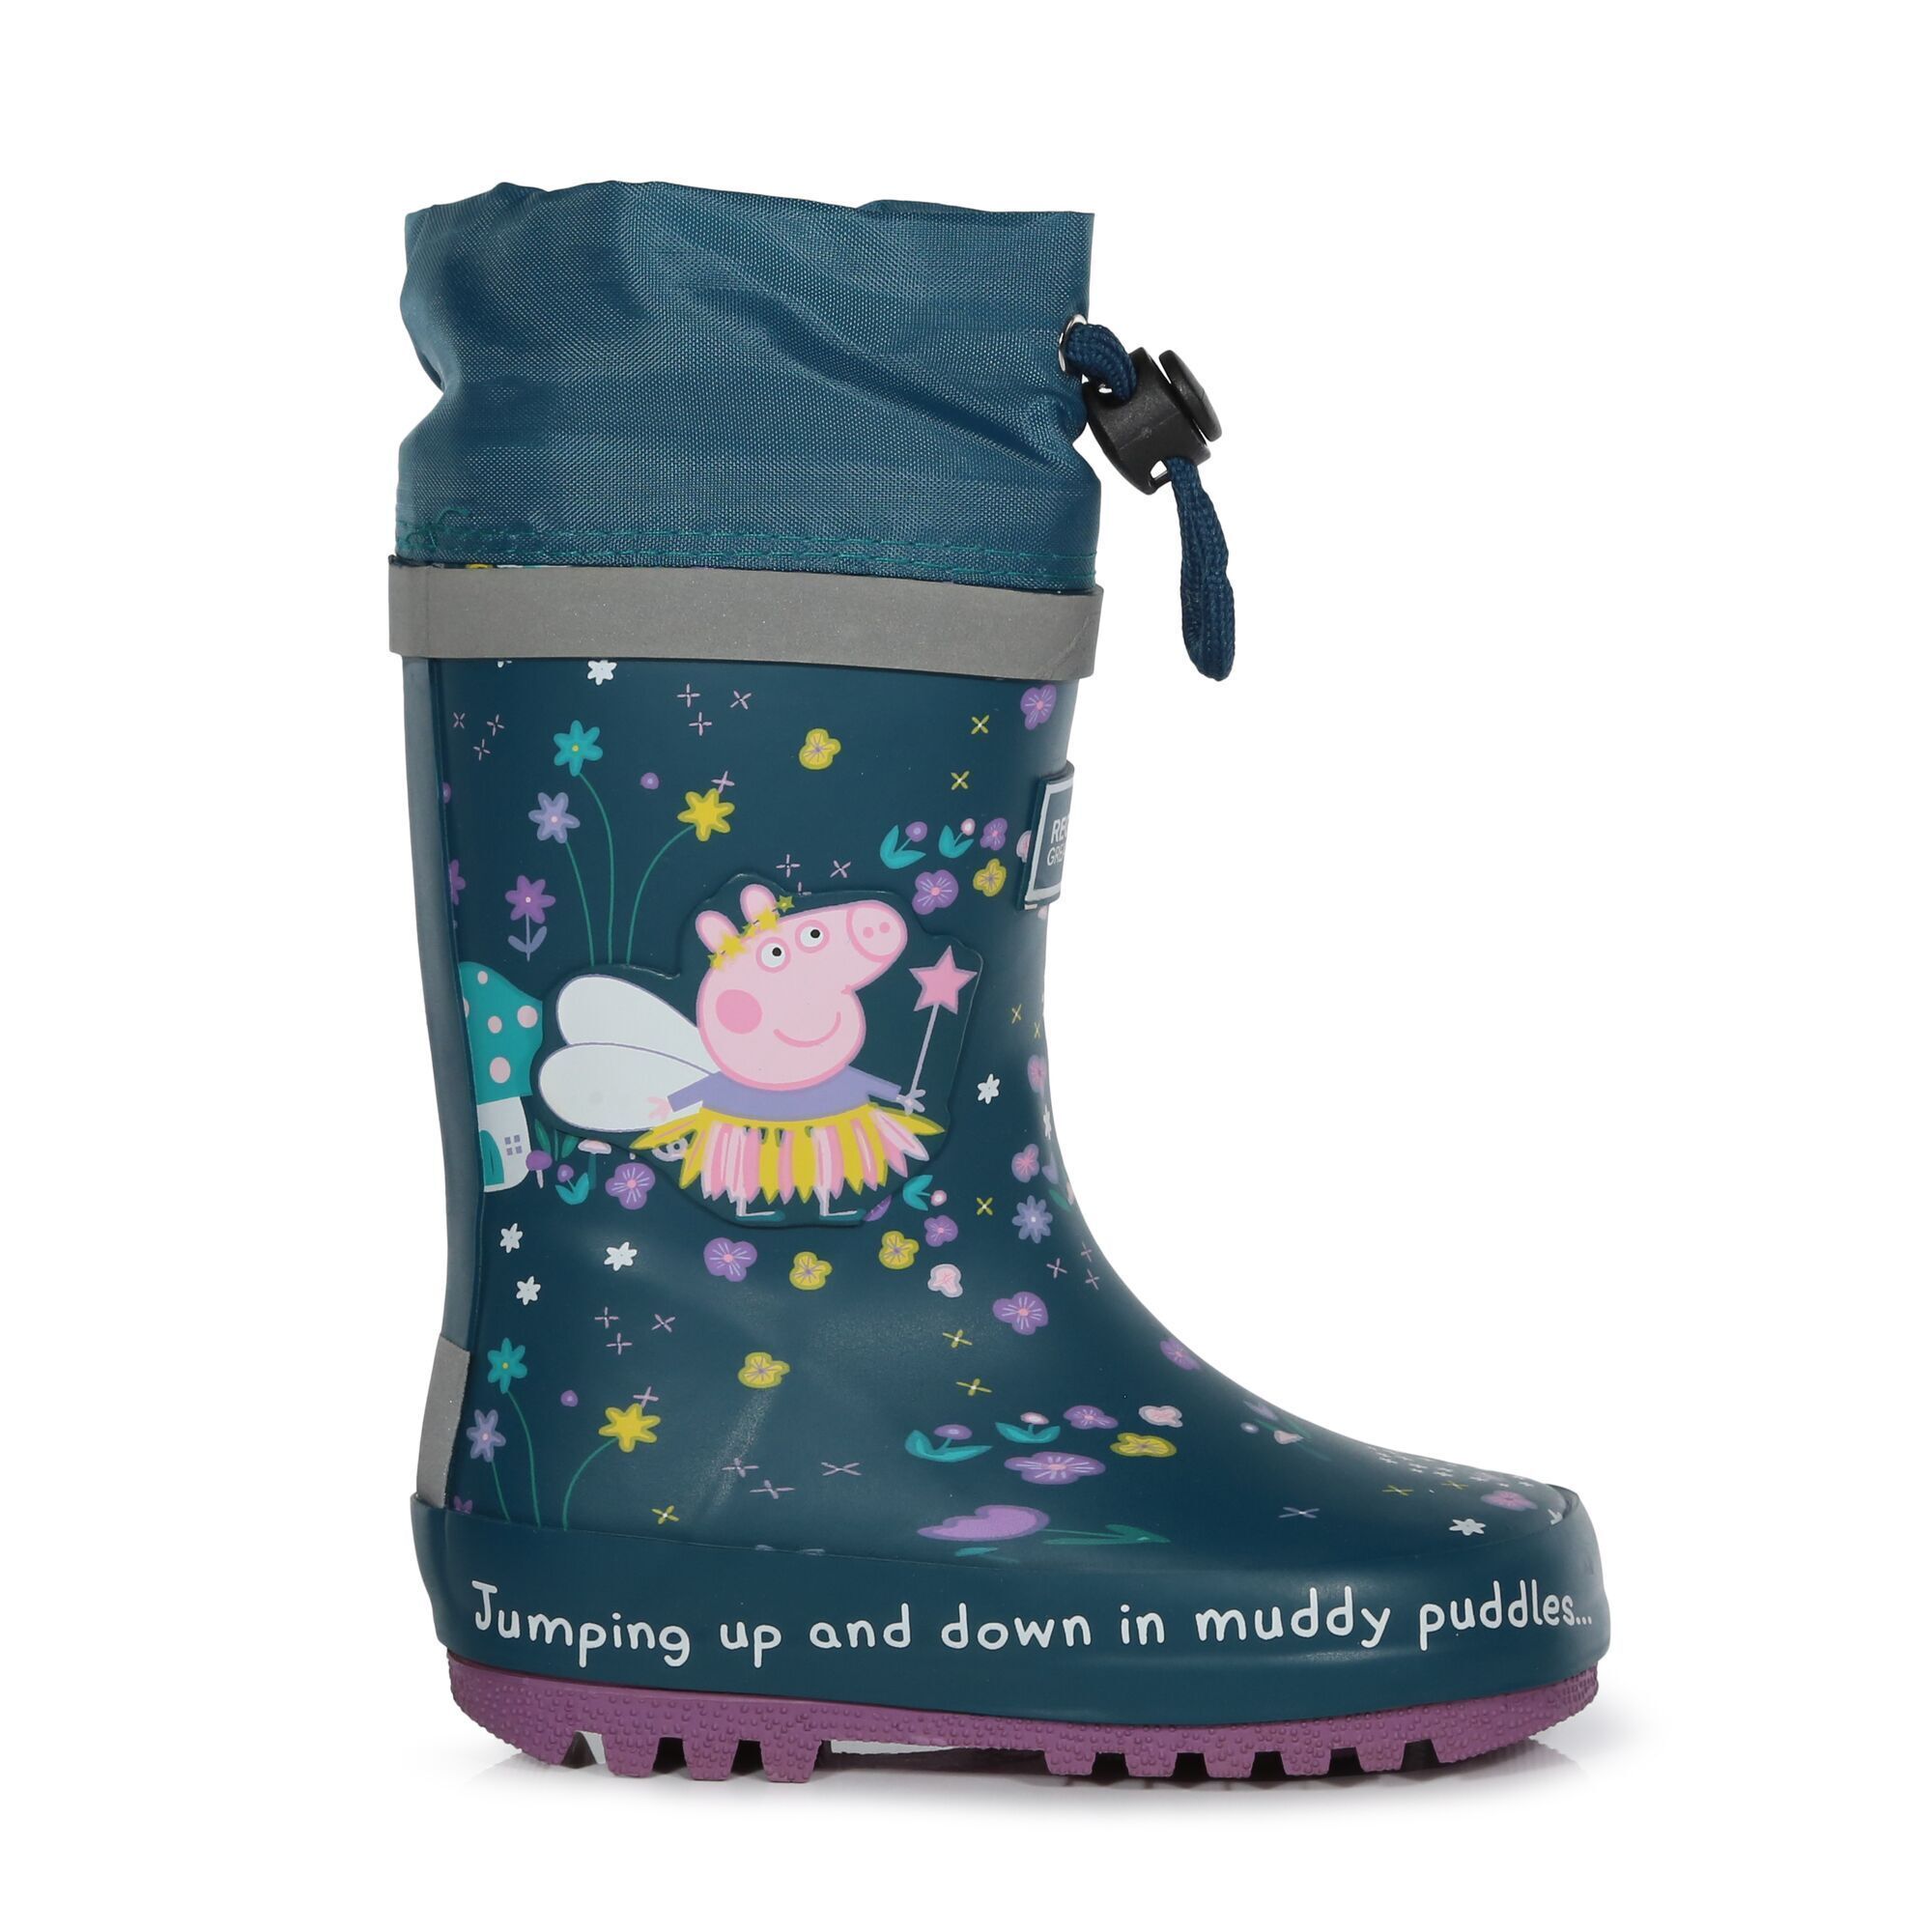 Fantasia Infantil/ Infantil Peppa Pig Splash Wellington Boots Regatta Fantasy